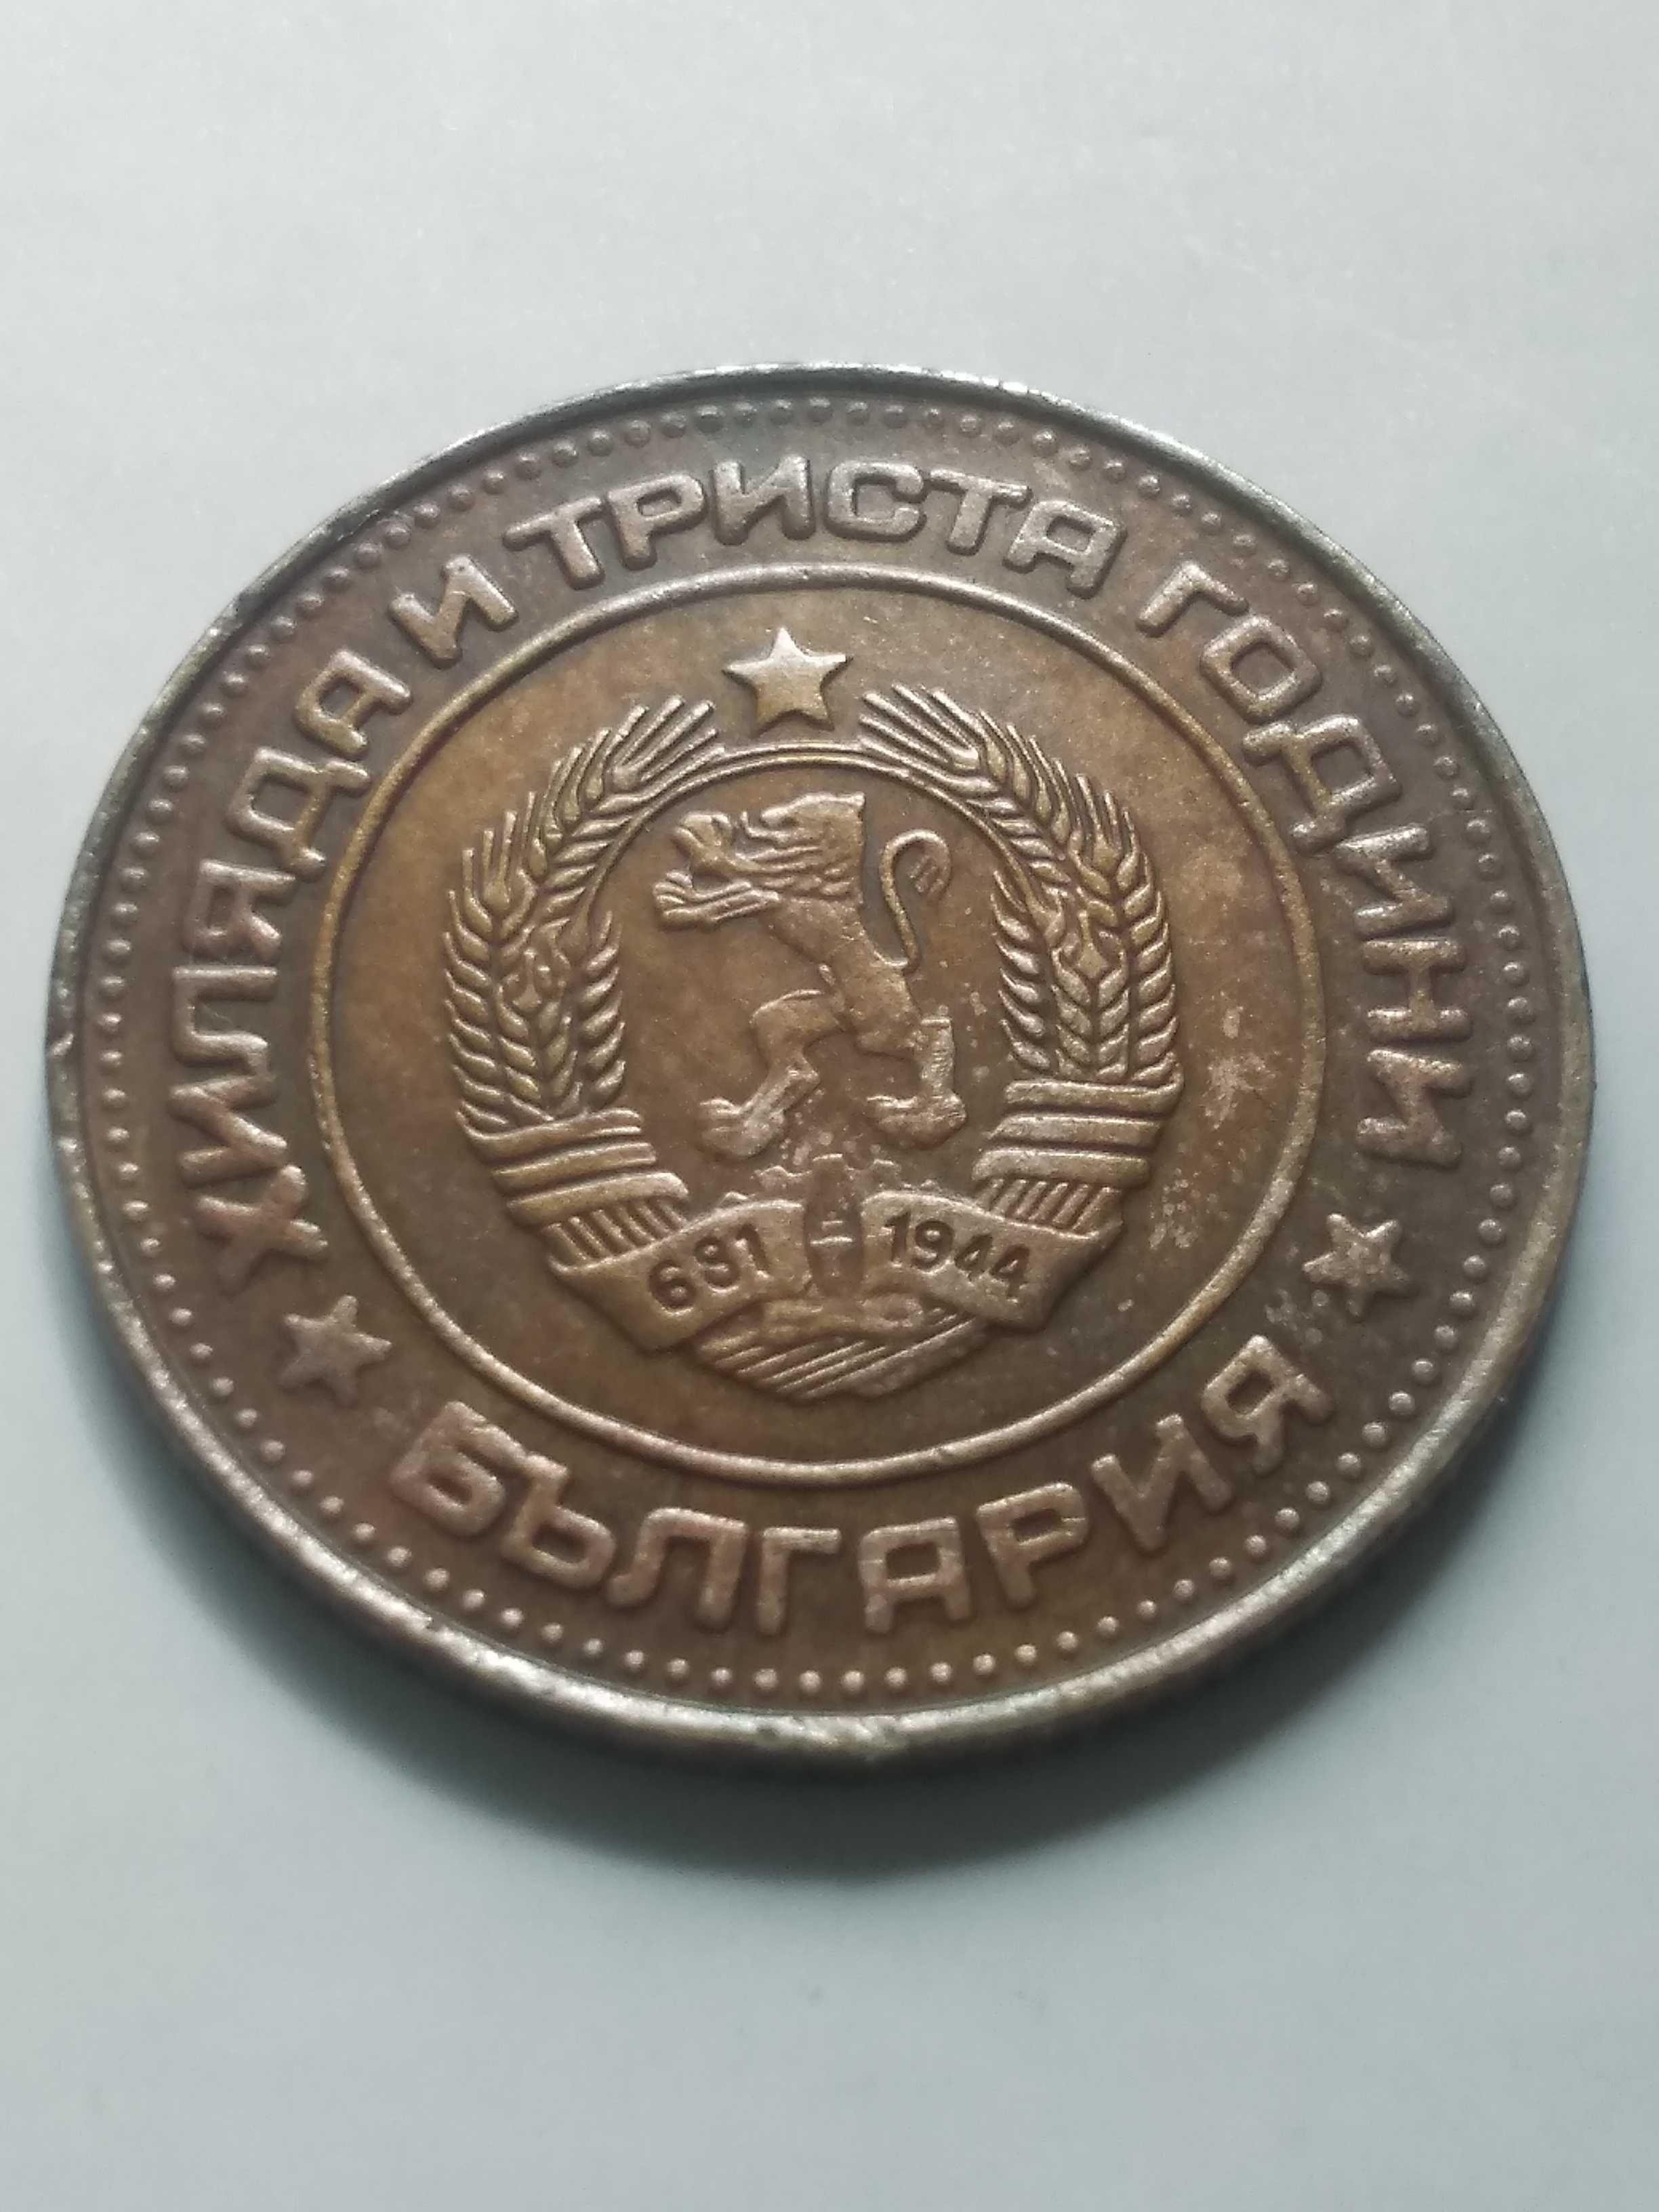 Български монети от 1981г.